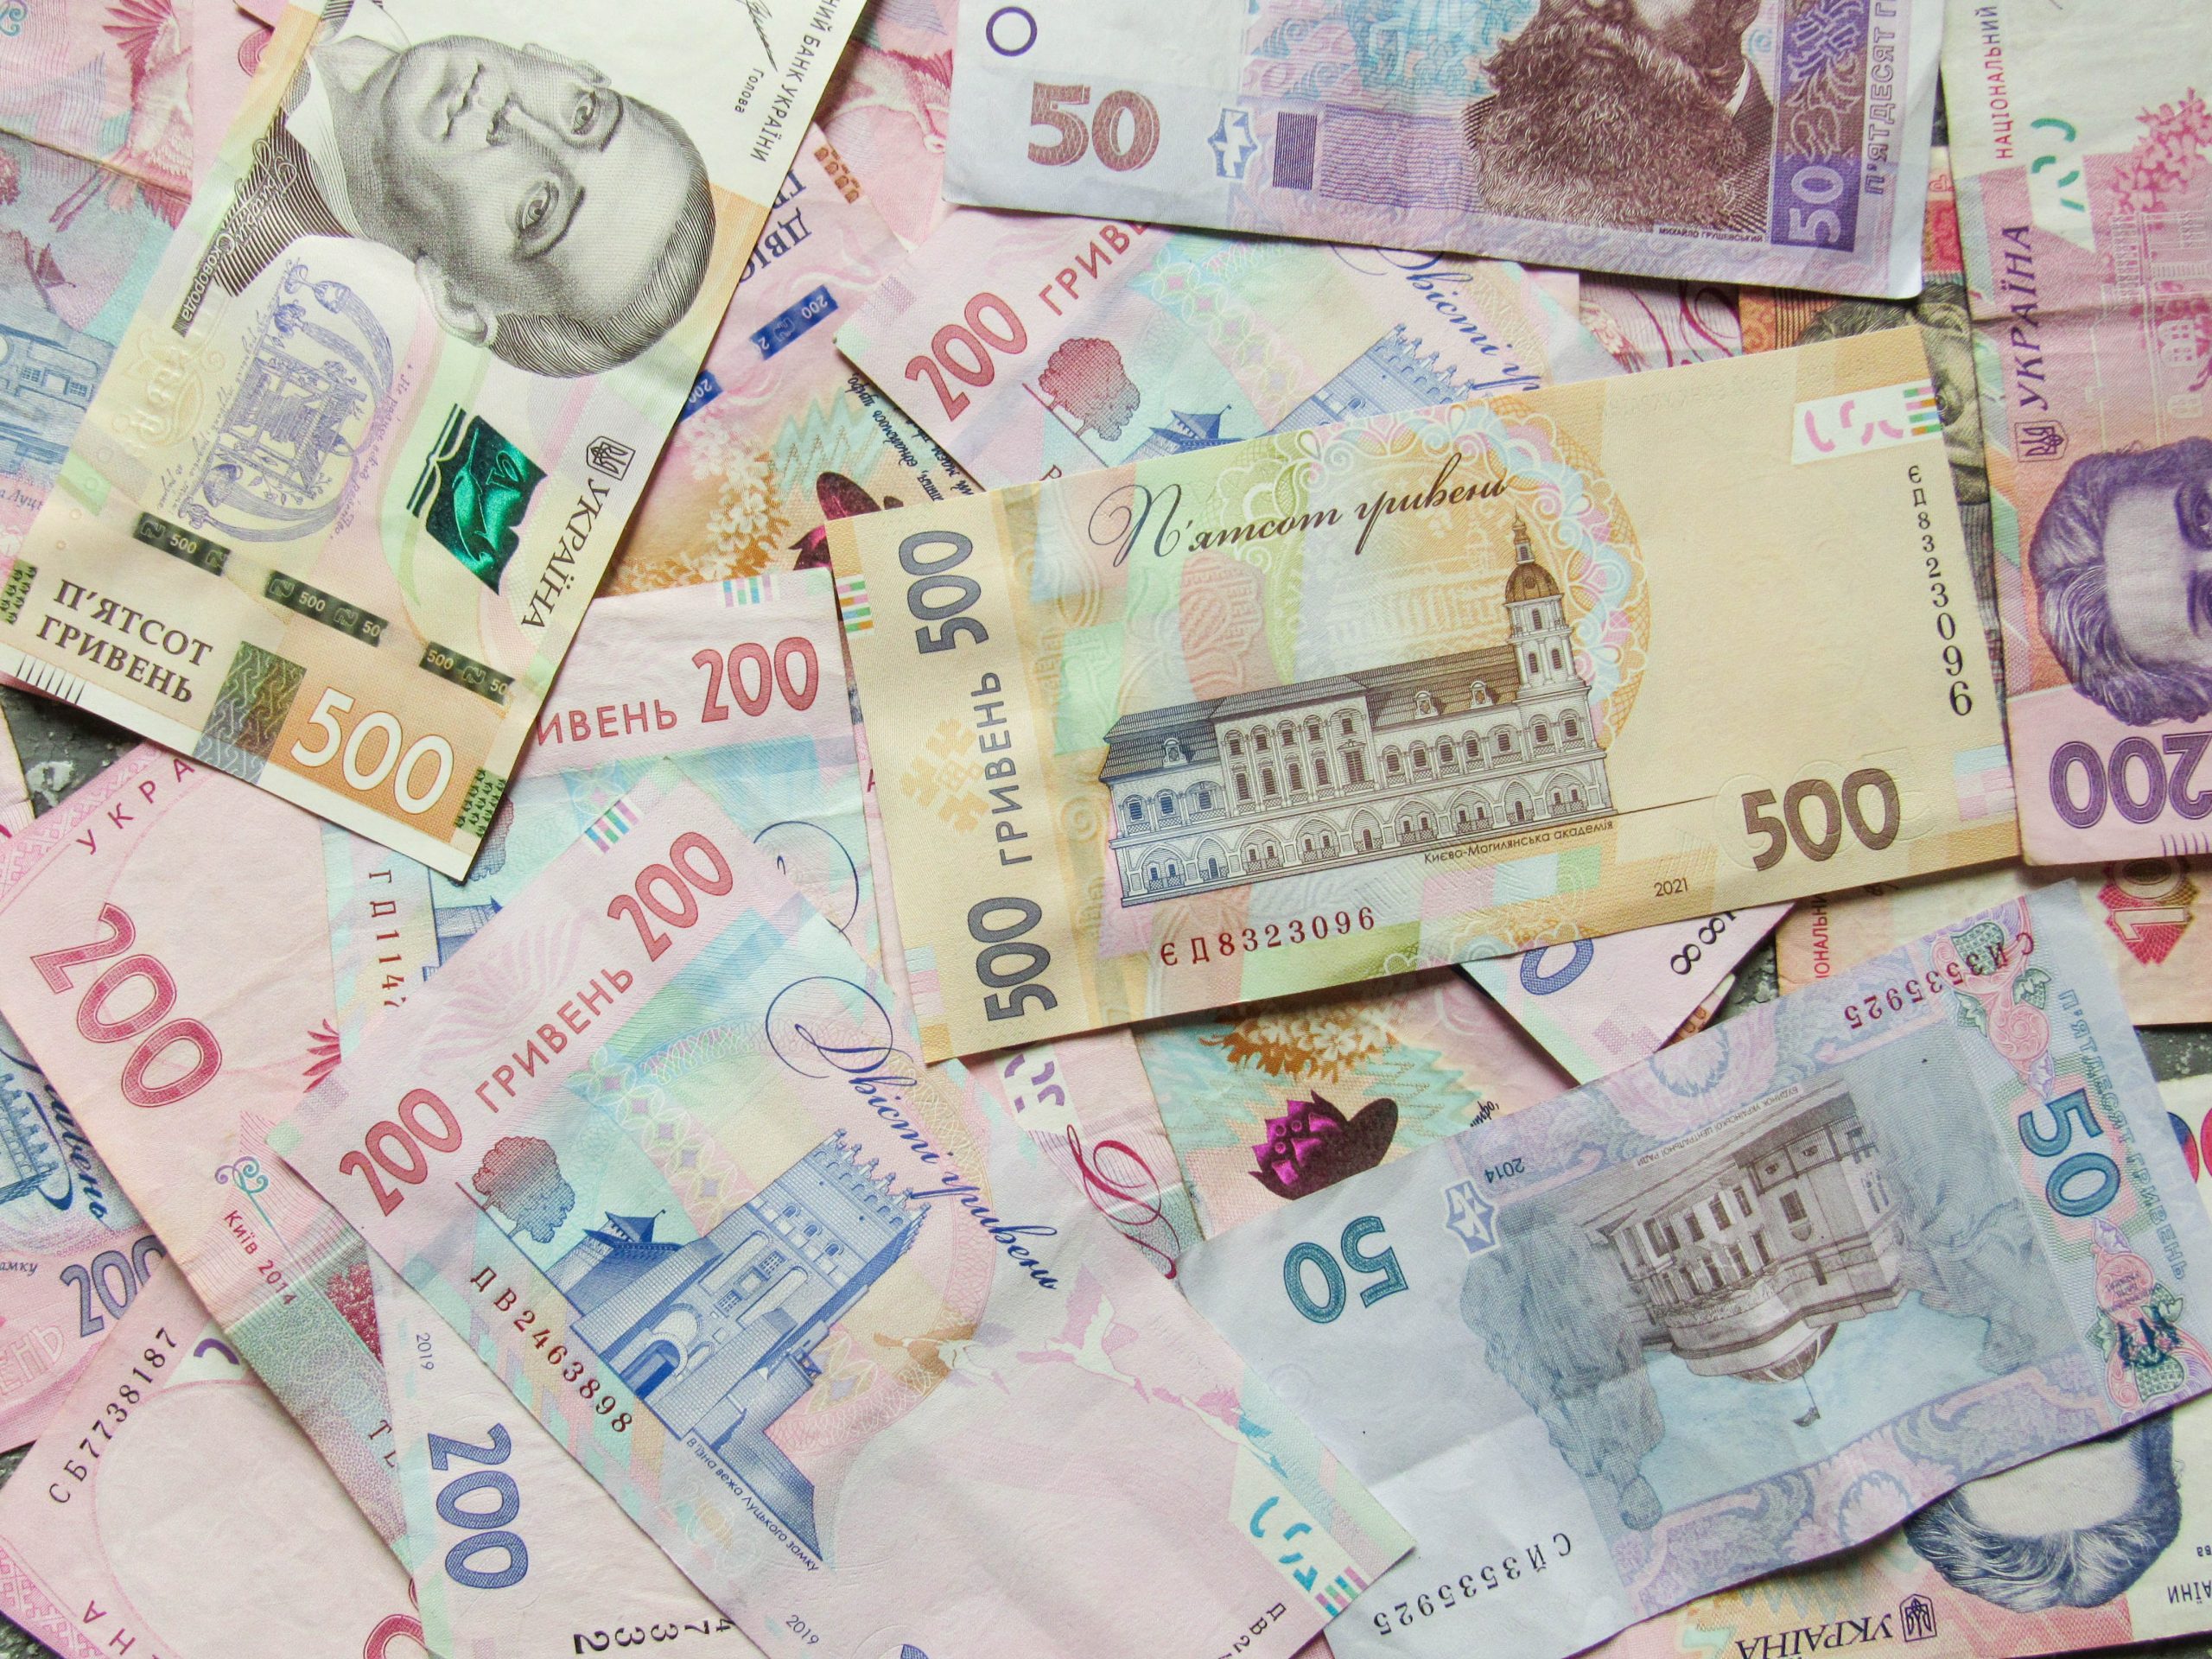 ukranian money